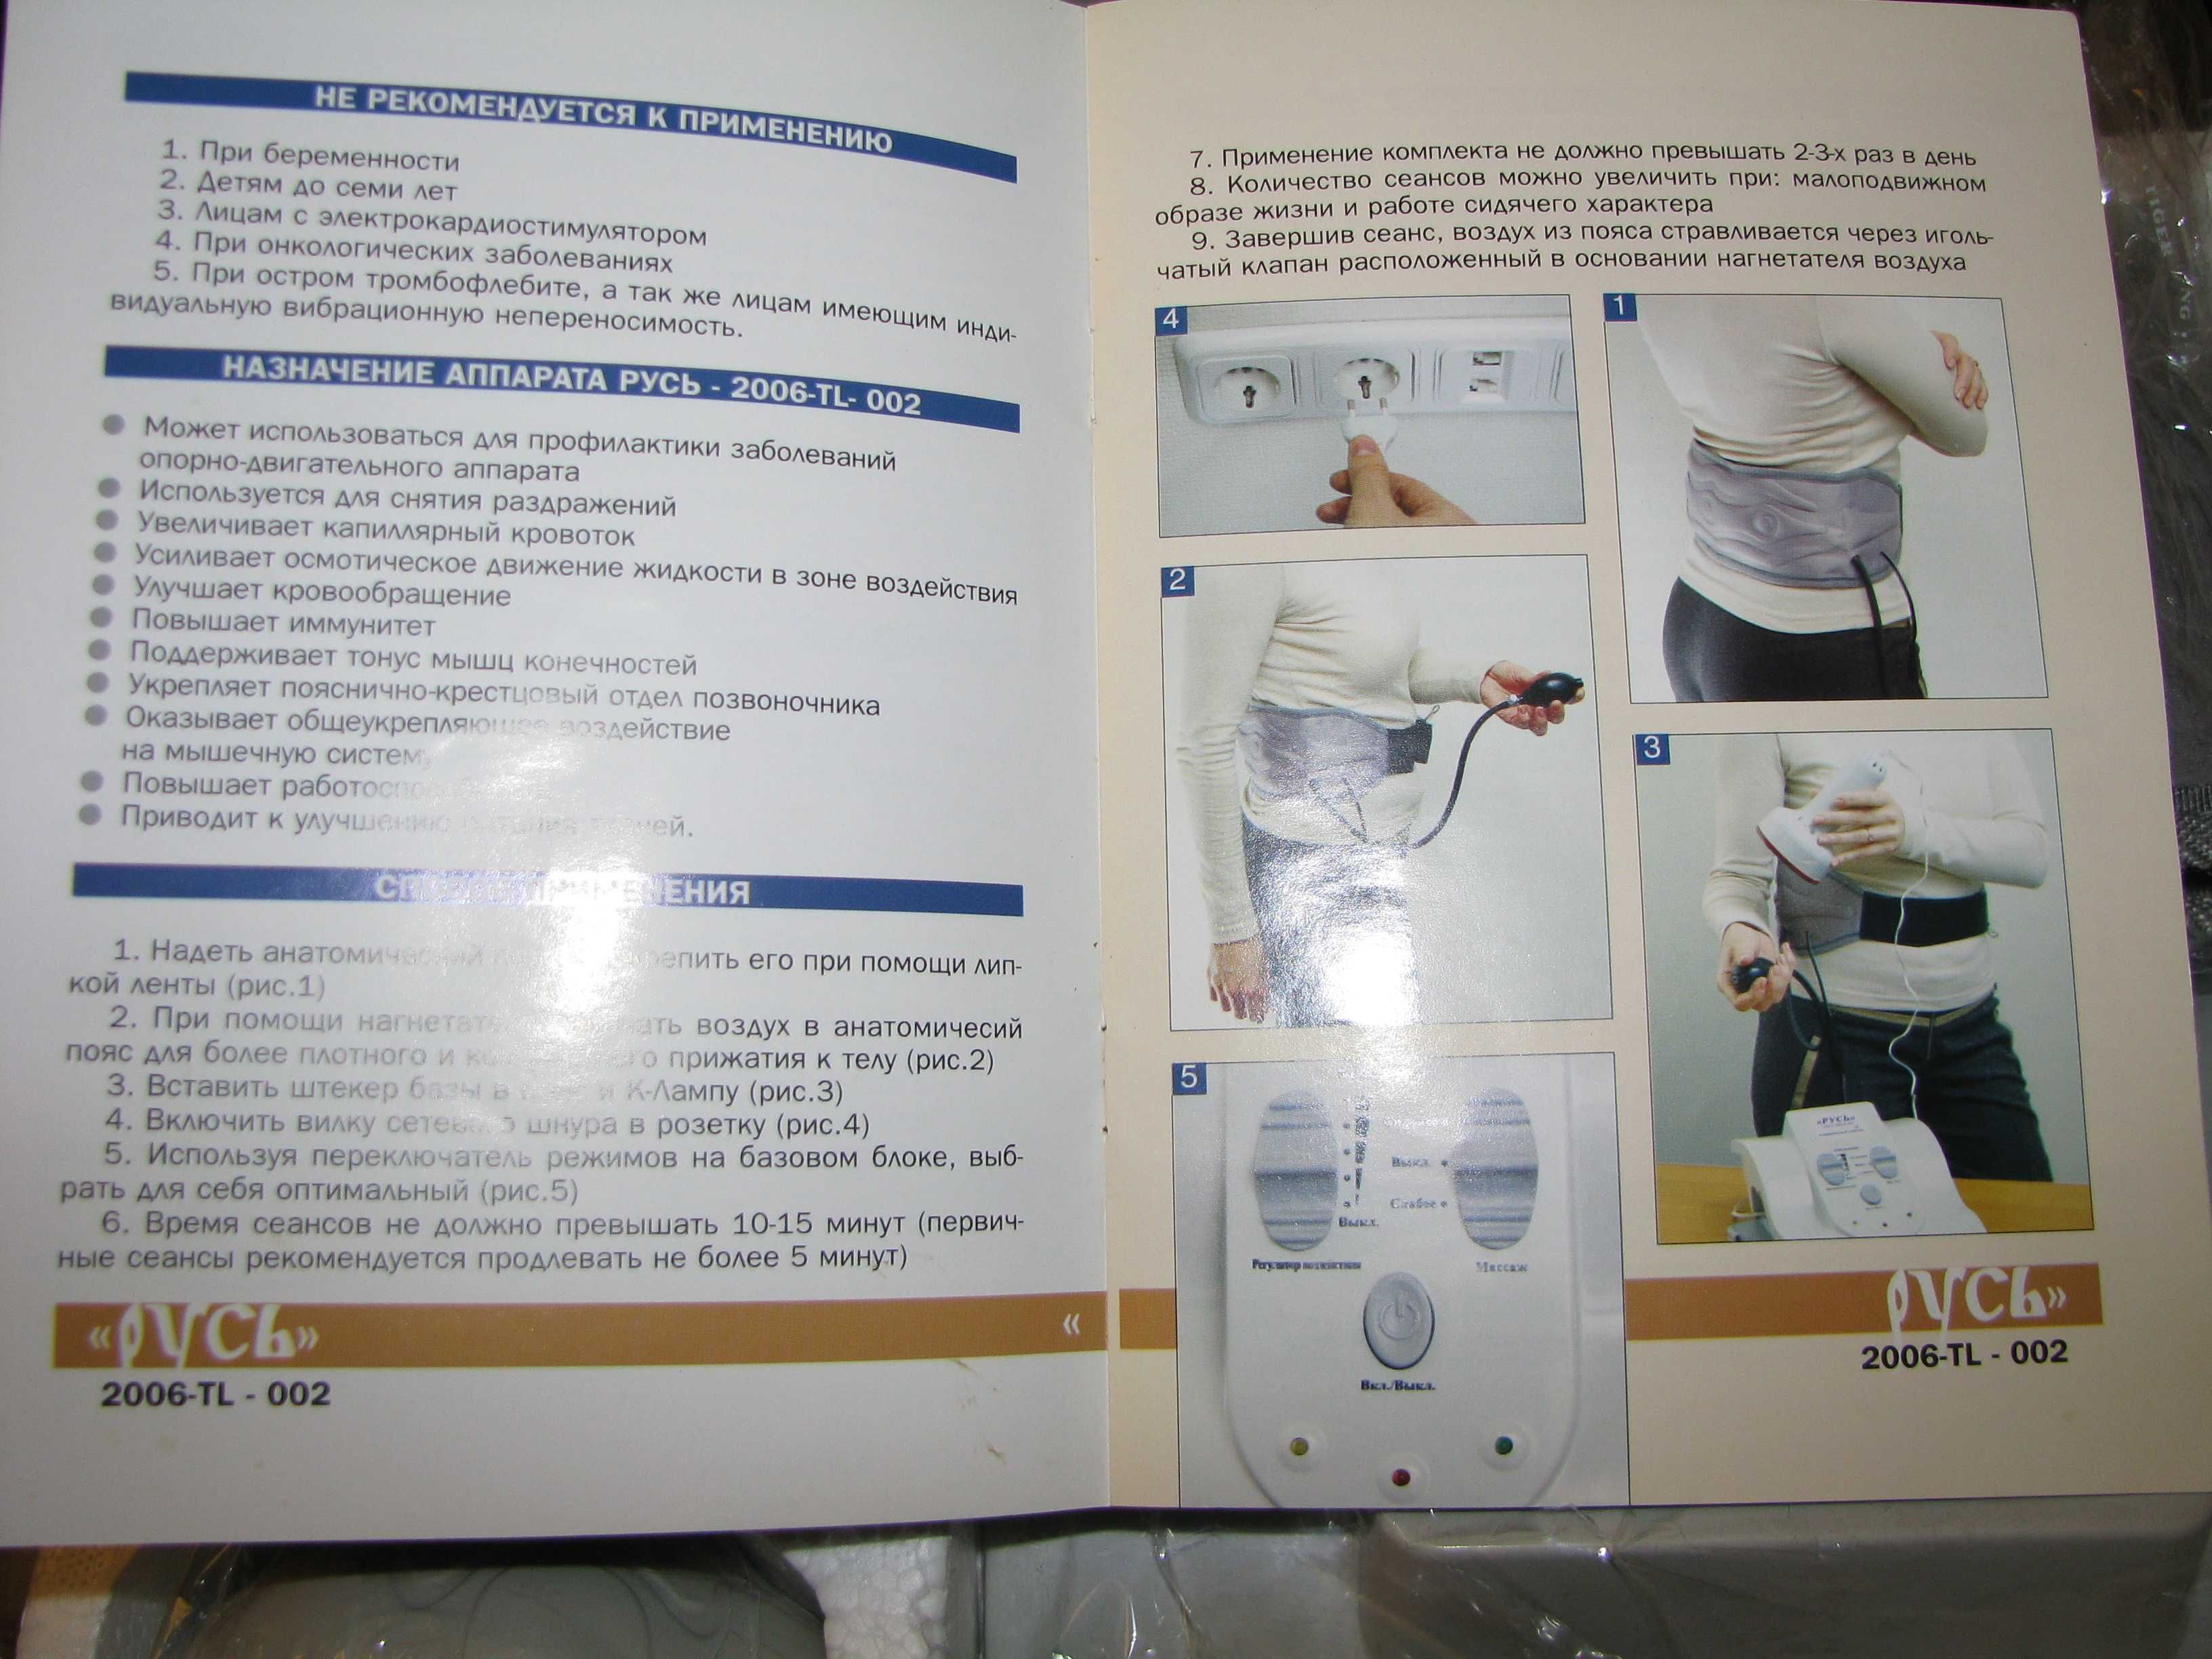 Оздоровительный комплект Русь - массажер 2006 - TL - 002 Новый